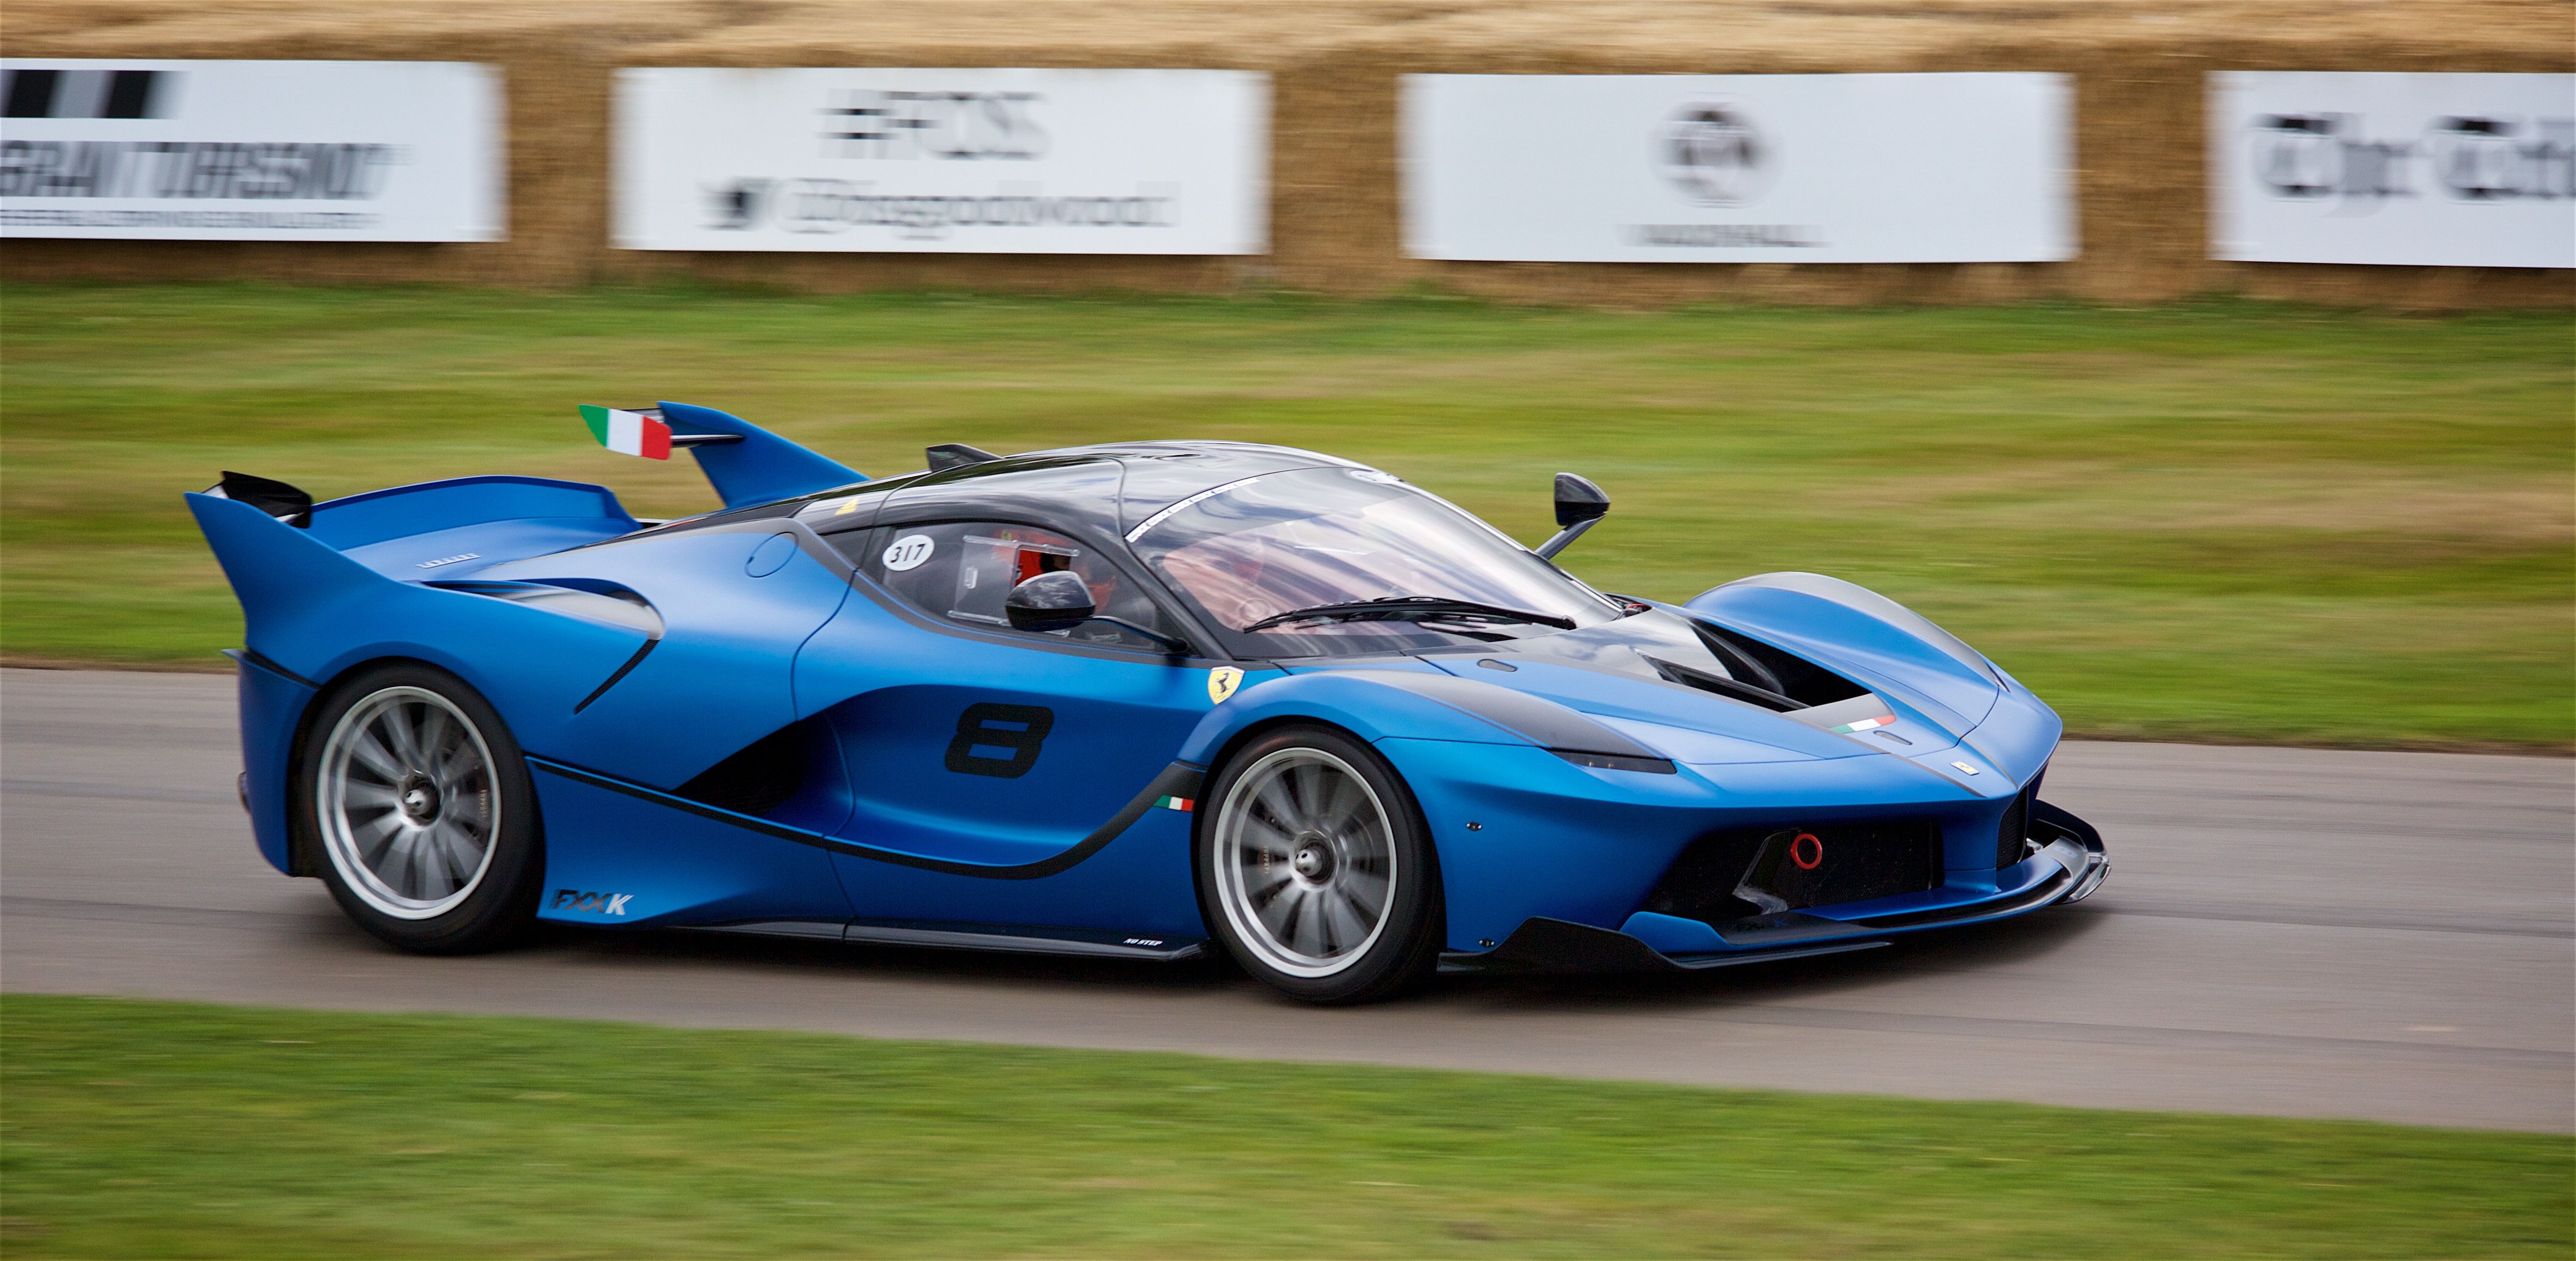 Blue Ferrari FXX K Evo on racetrack